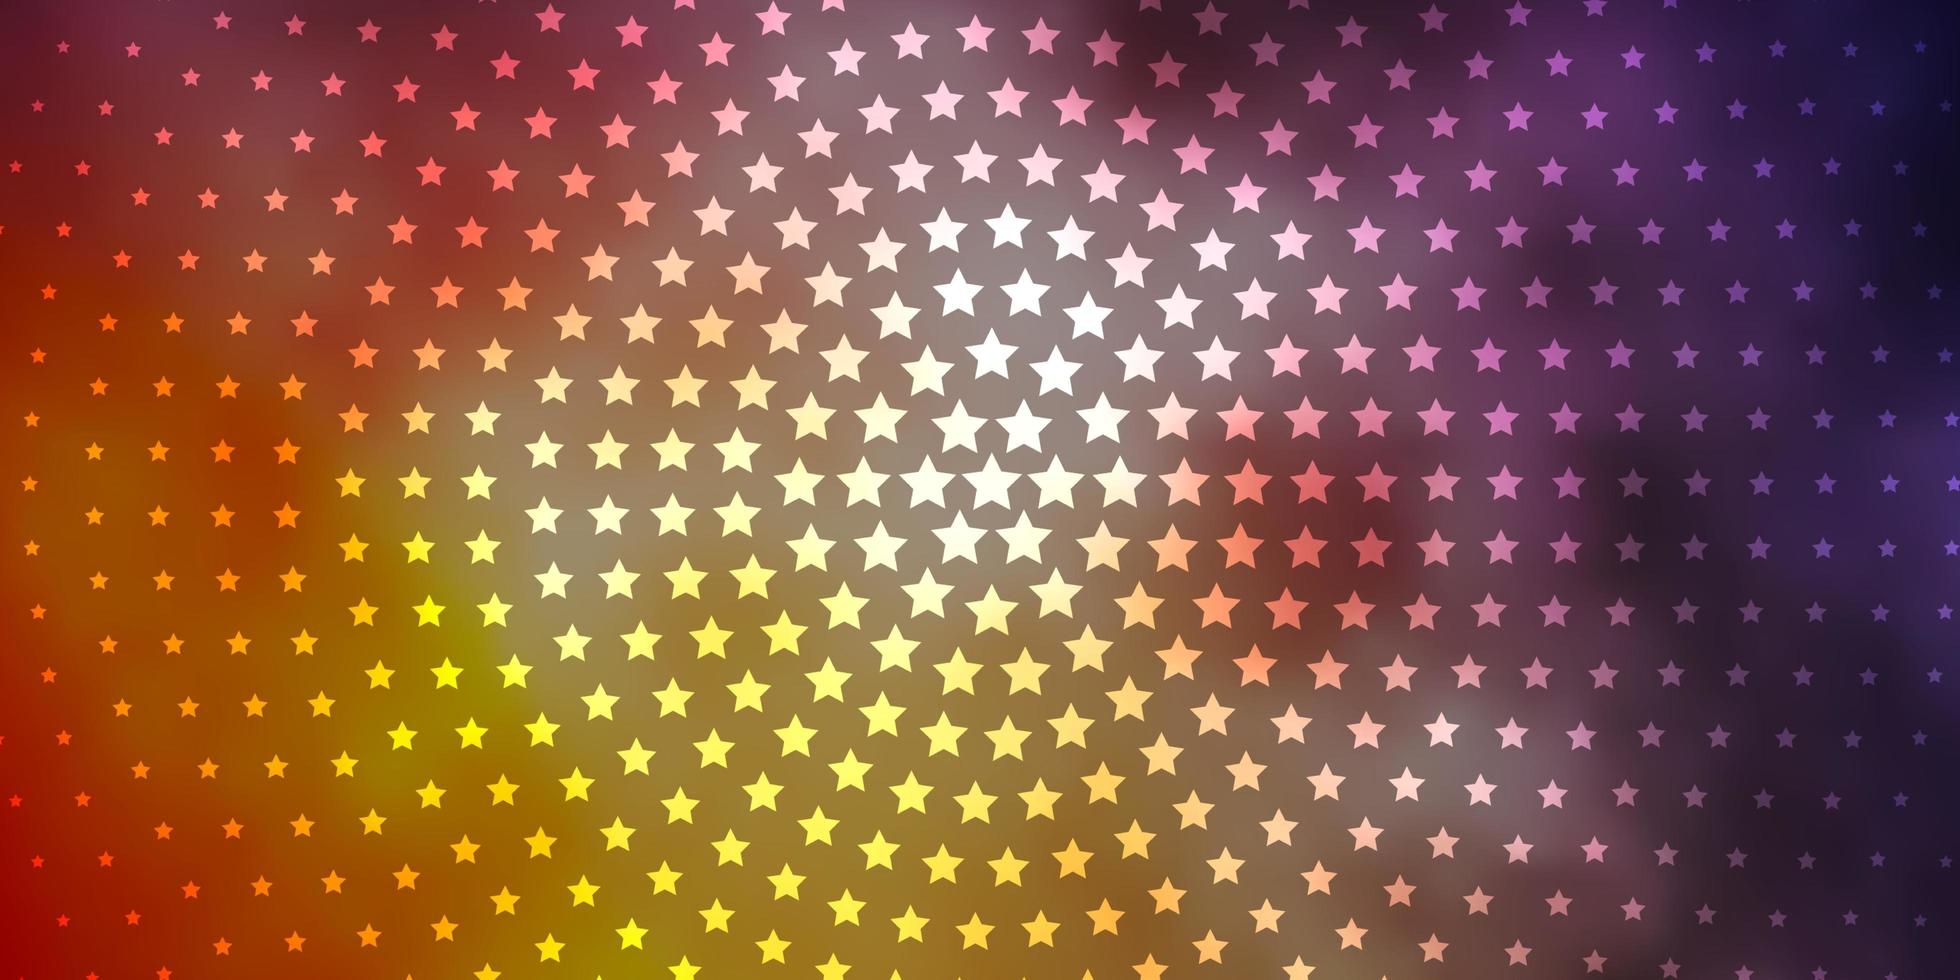 hellblaue, gelbe Vektortextur mit schönen Sternen. bunte Illustration mit abstrakten Farbverlaufssternen. Muster für Neujahrsanzeige, Broschüren. vektor